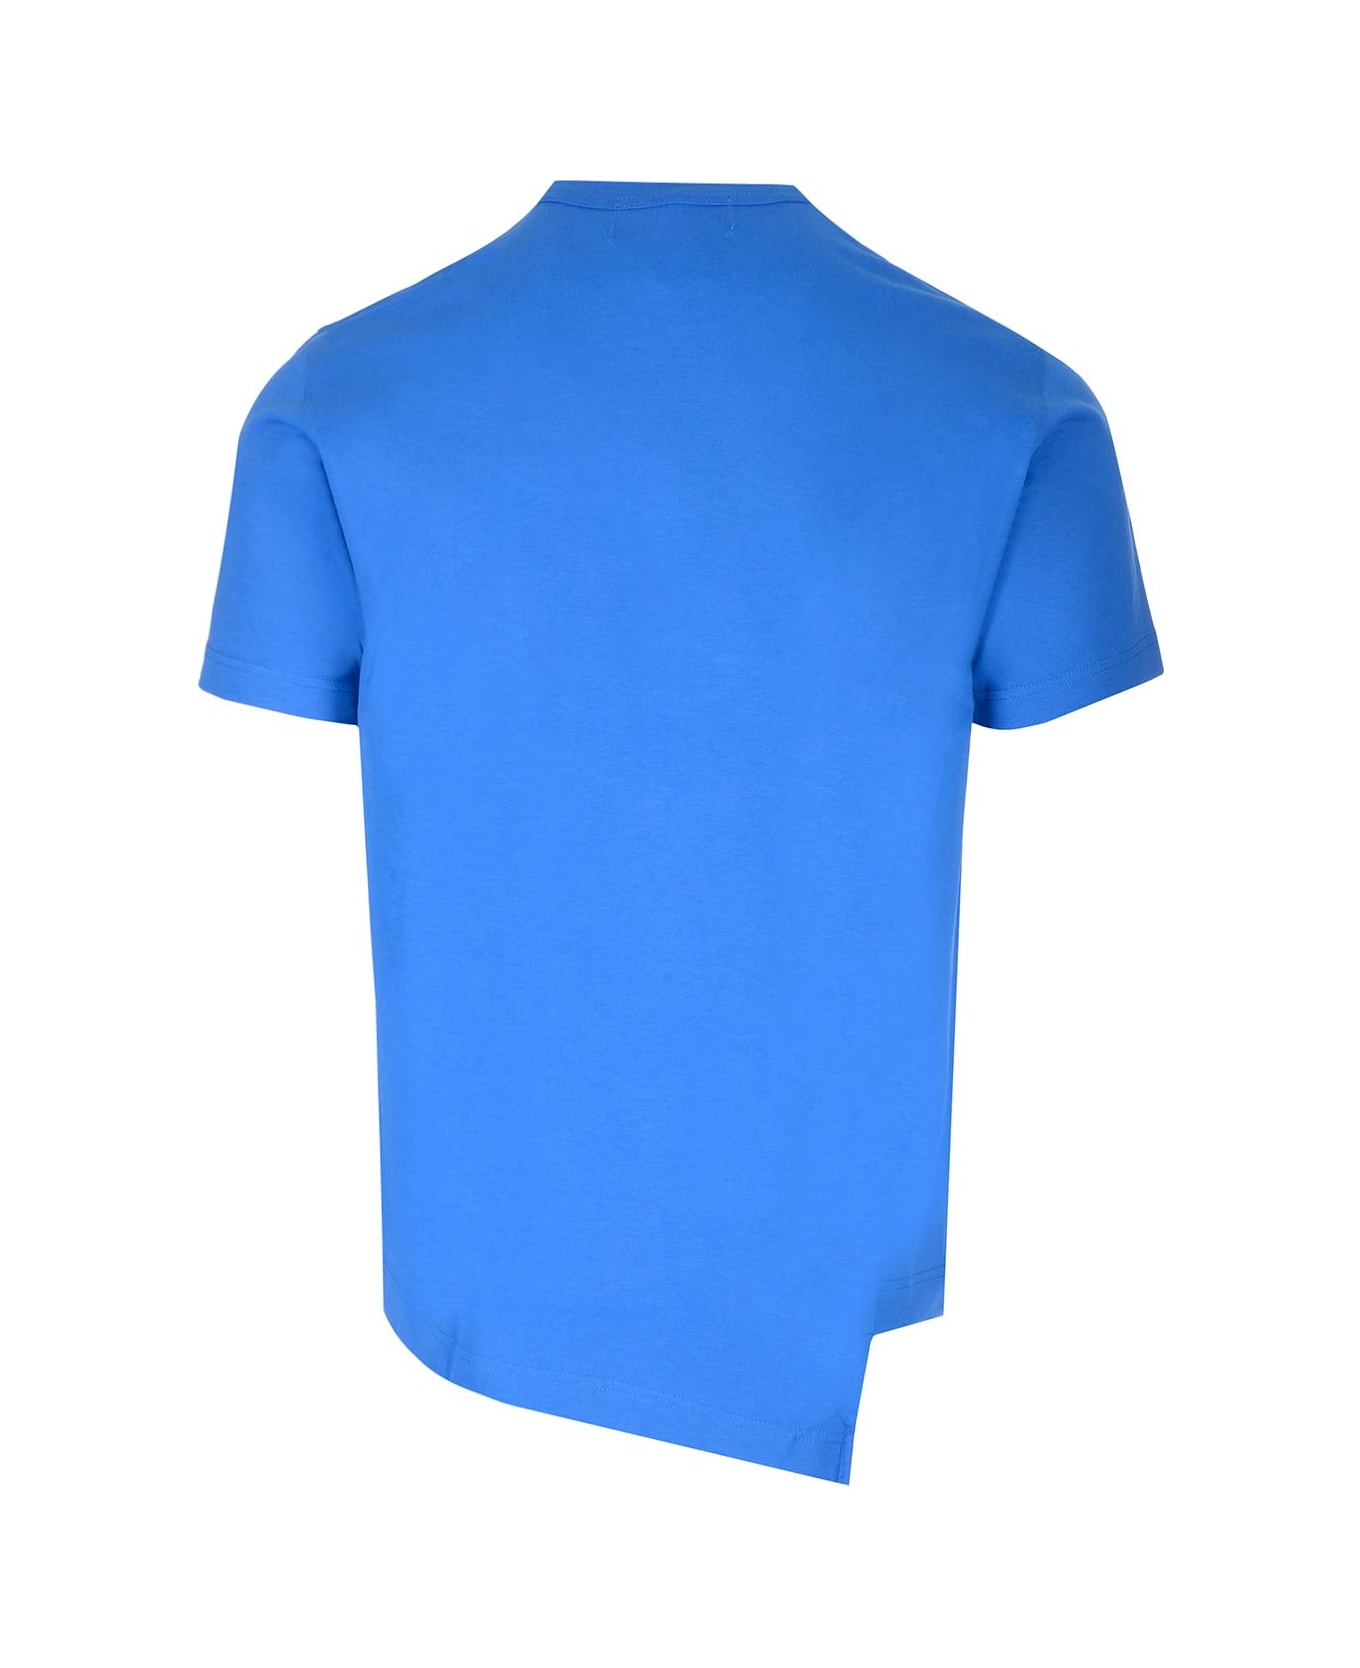 Comme des Garçons Blue Asymmetric T-shirt X La Coste - BLUE